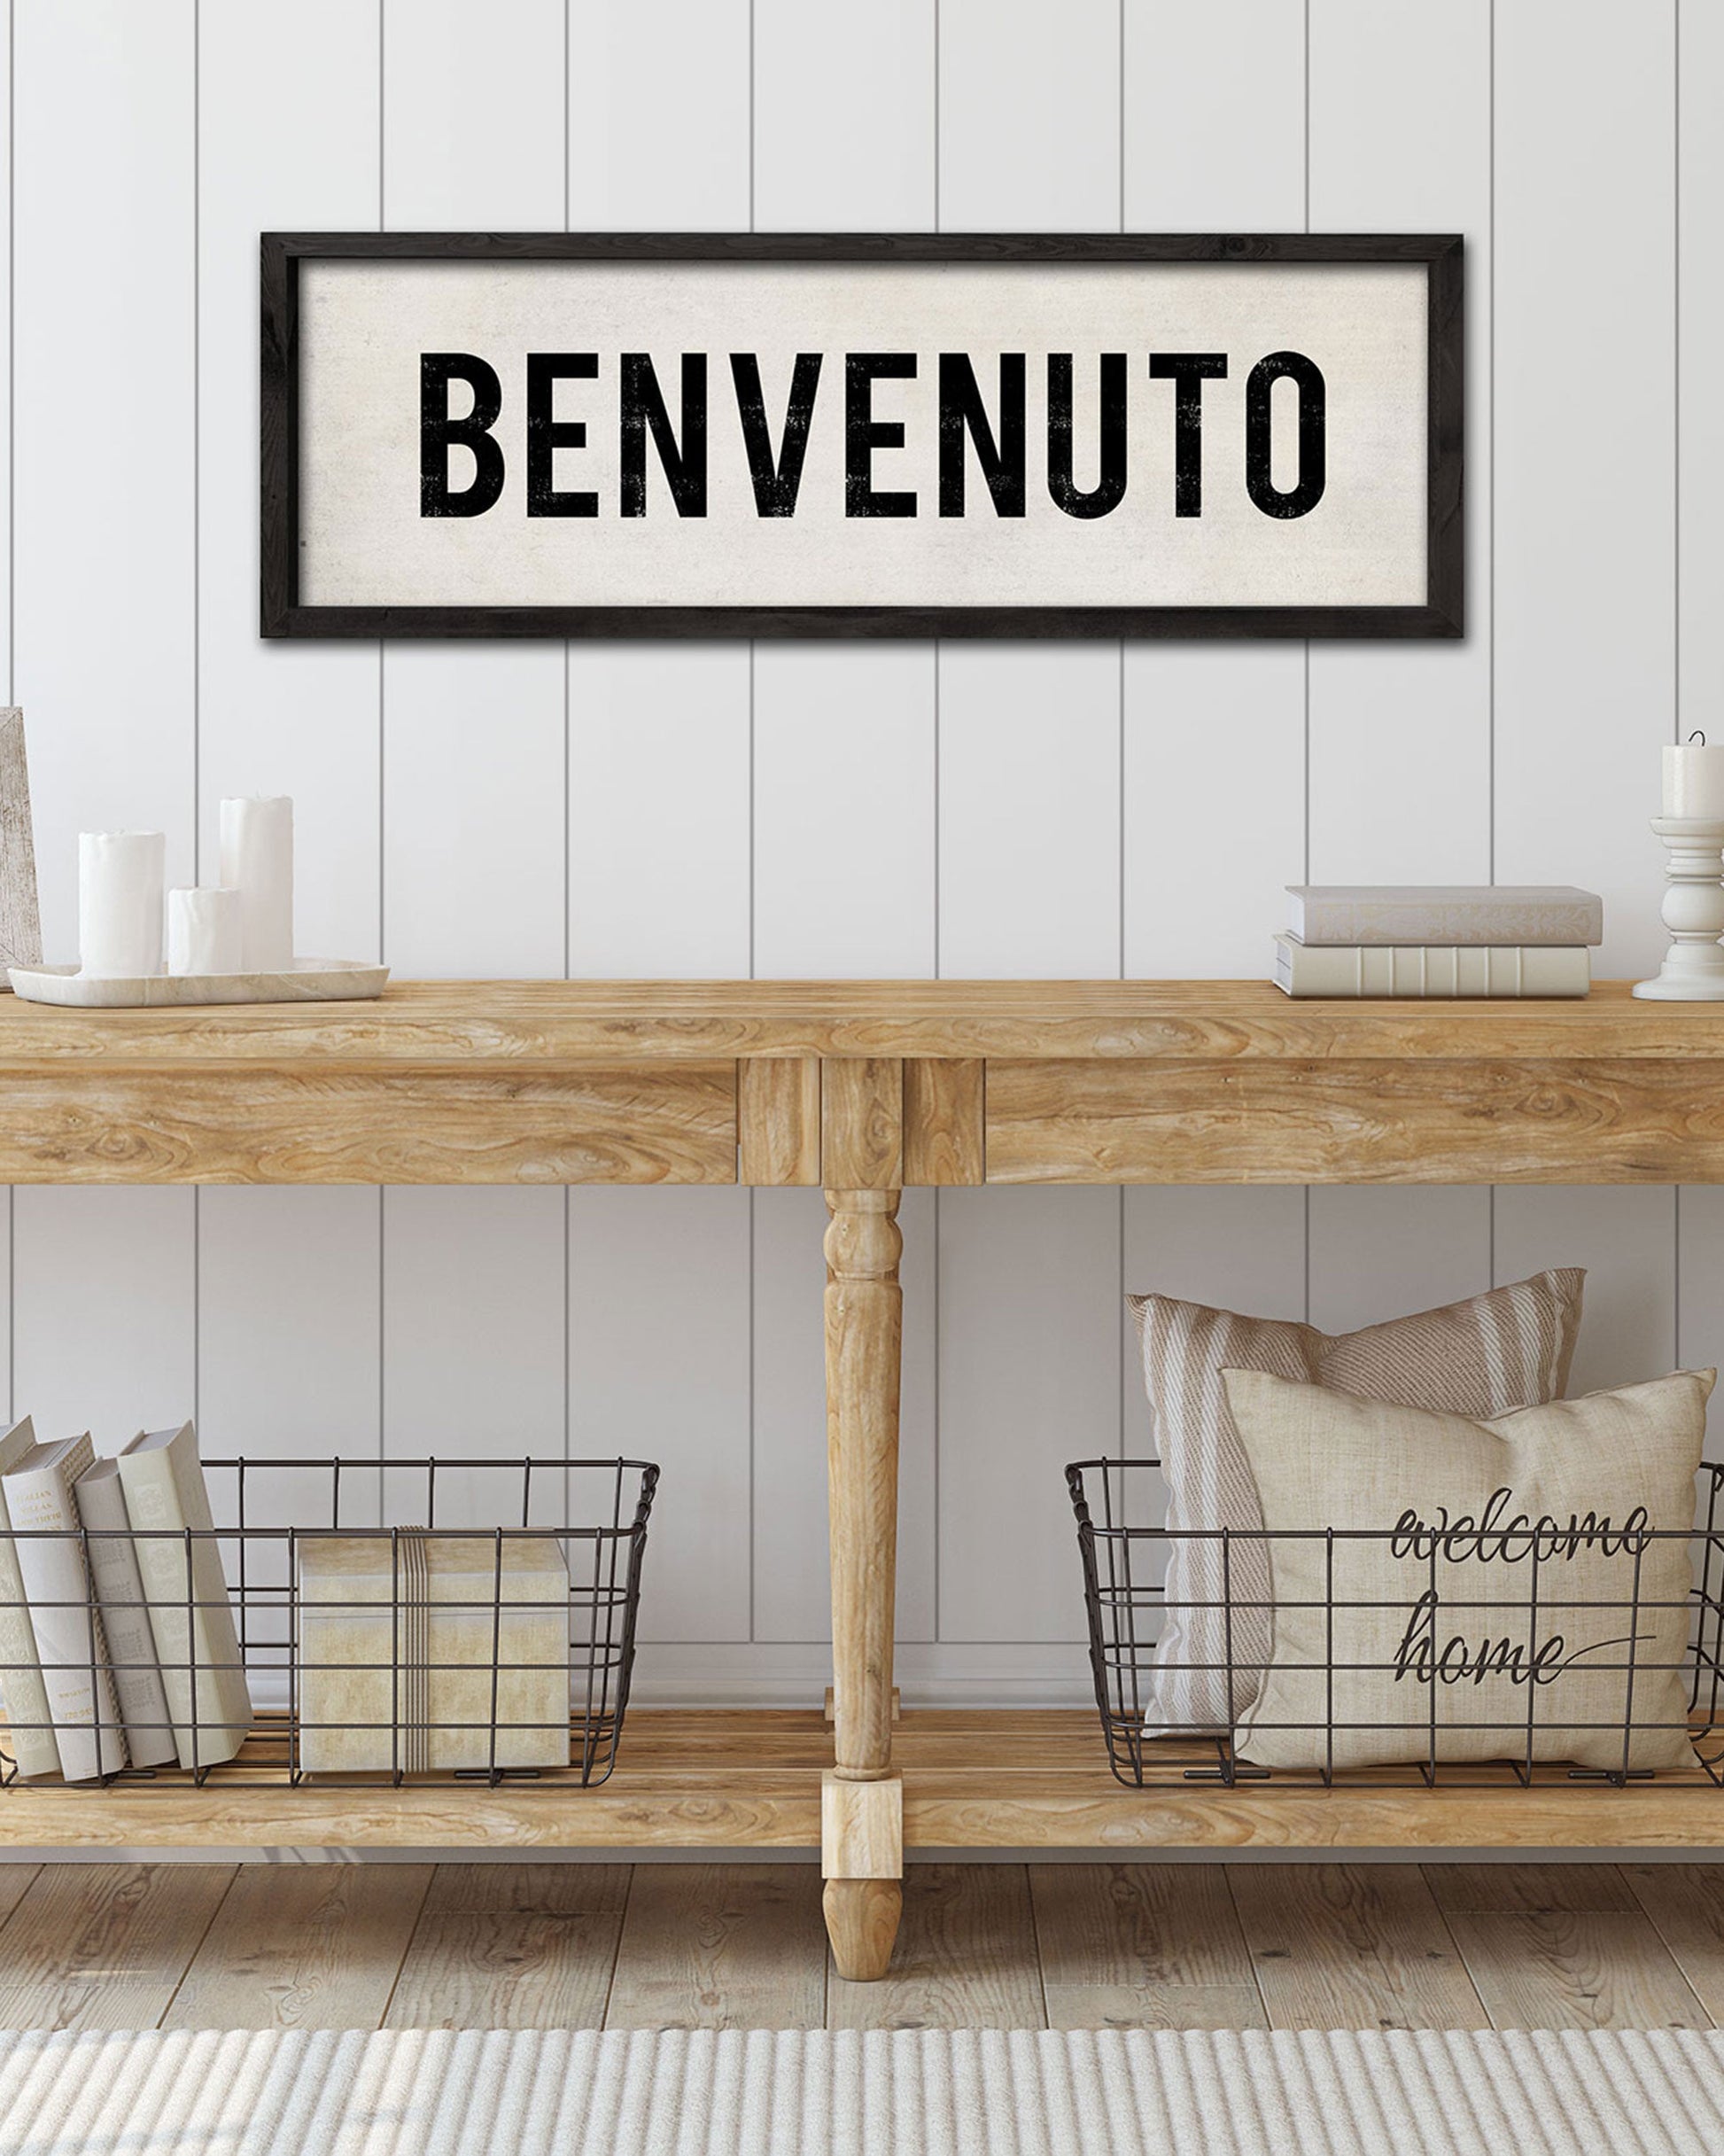 Benvenuto Italian Welcome Sign, Rustic Farmhouse Decor - Transit Design